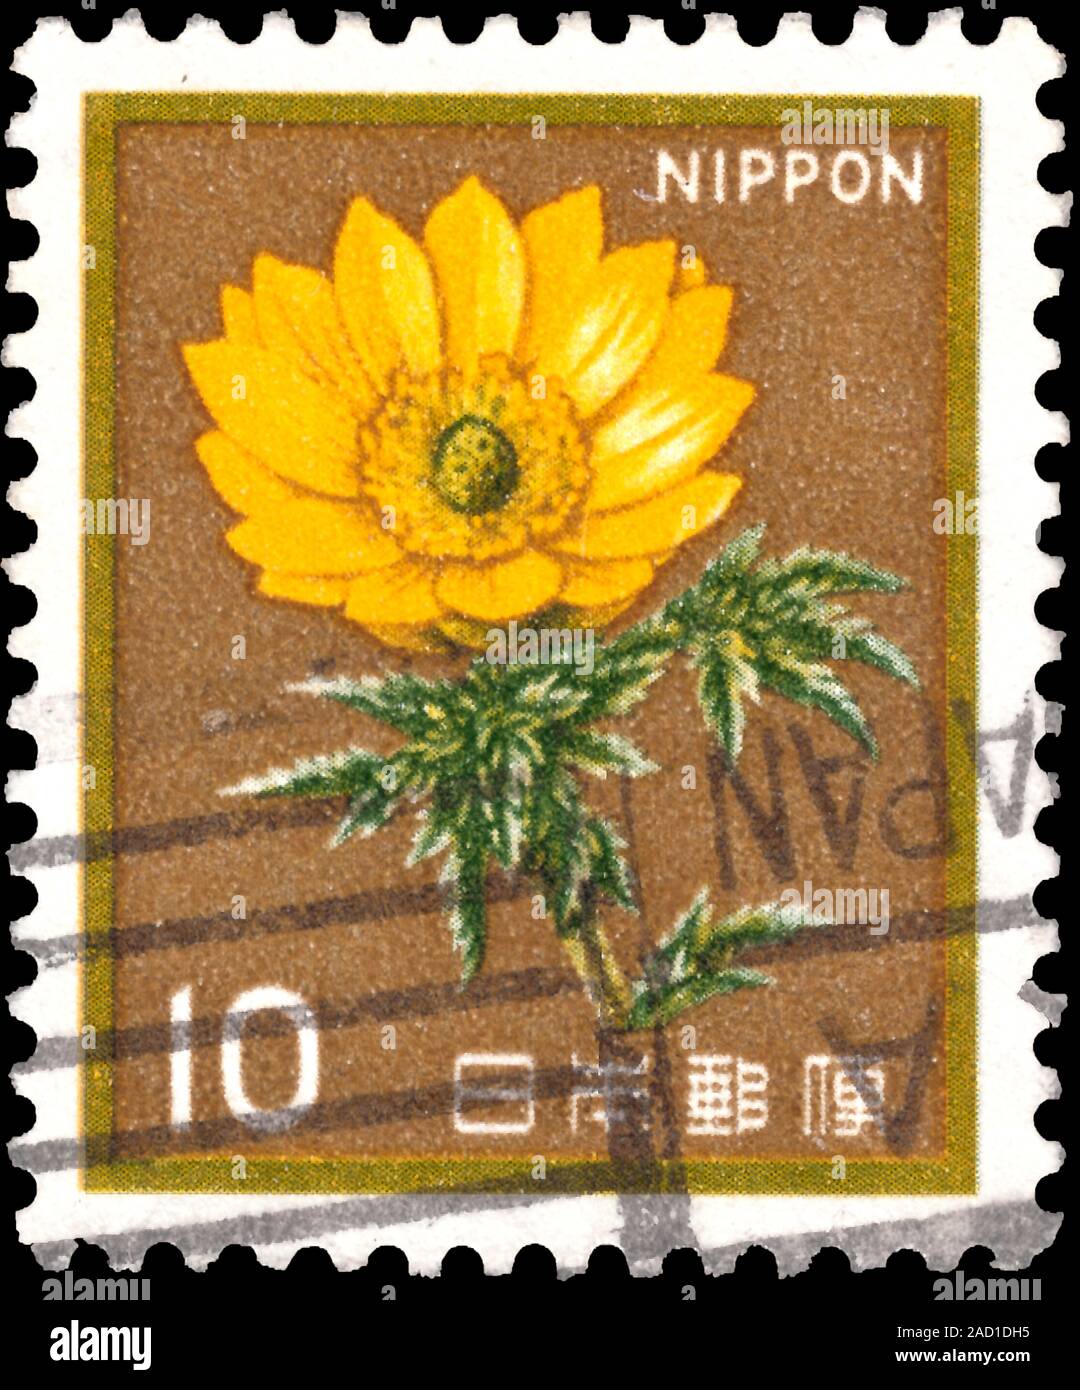 APAN - CIRCA 1980: a stamp printed in the Japan shows White Trumpet Lily, Lilium Longiflorum, Adonis amurensis, Flower, circa 1980 Stock Photo